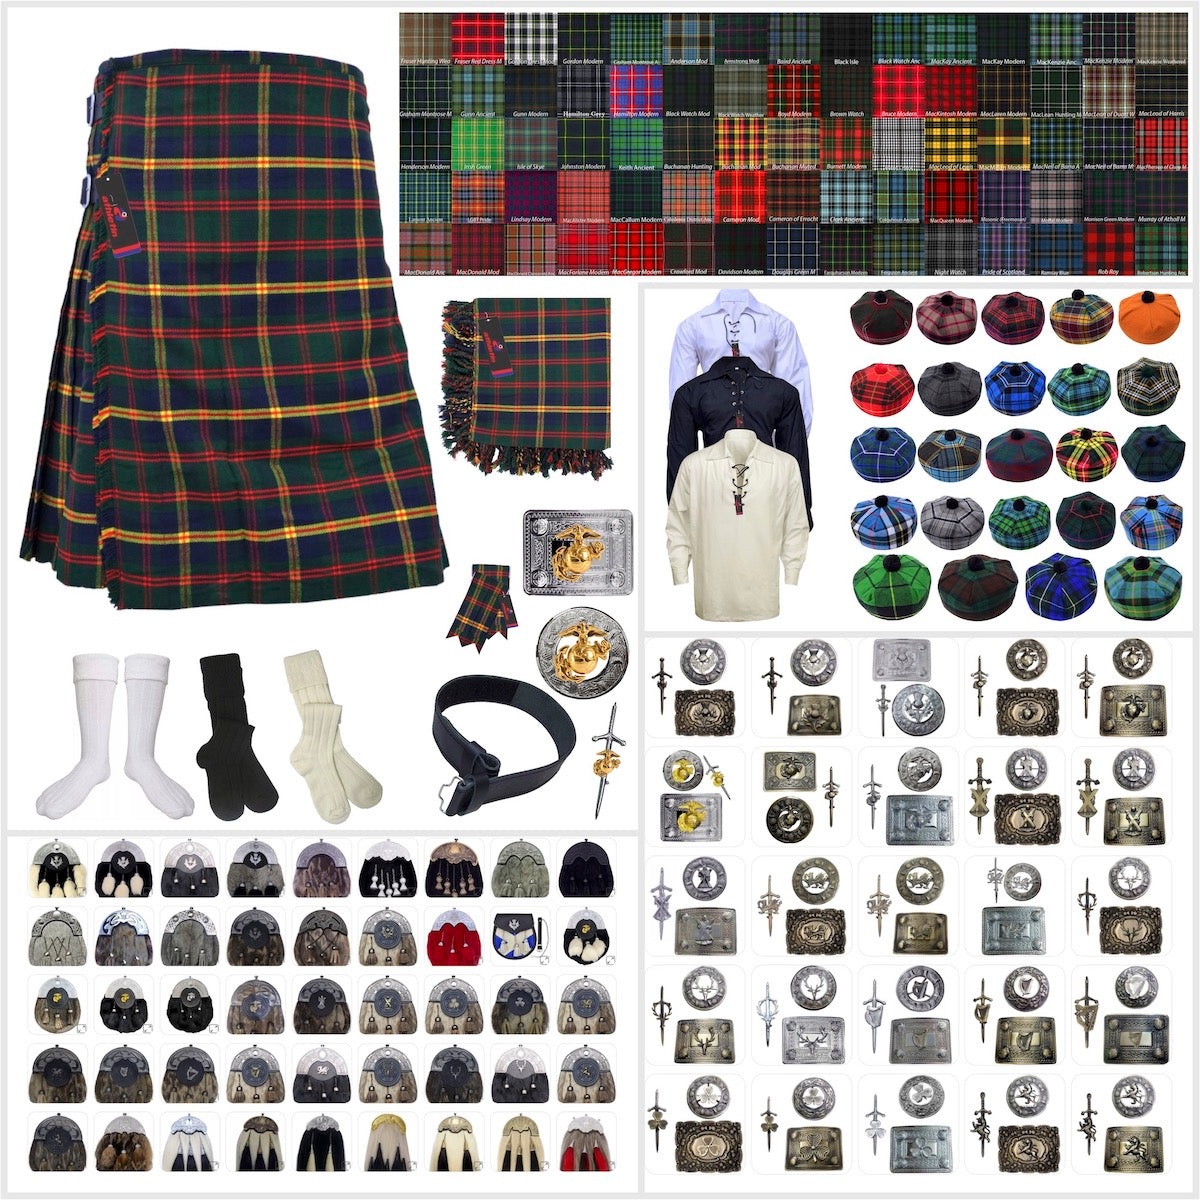 Tailor-made Scottish Mens Kilt Outfit - Tartan Plaid Kilts for Men